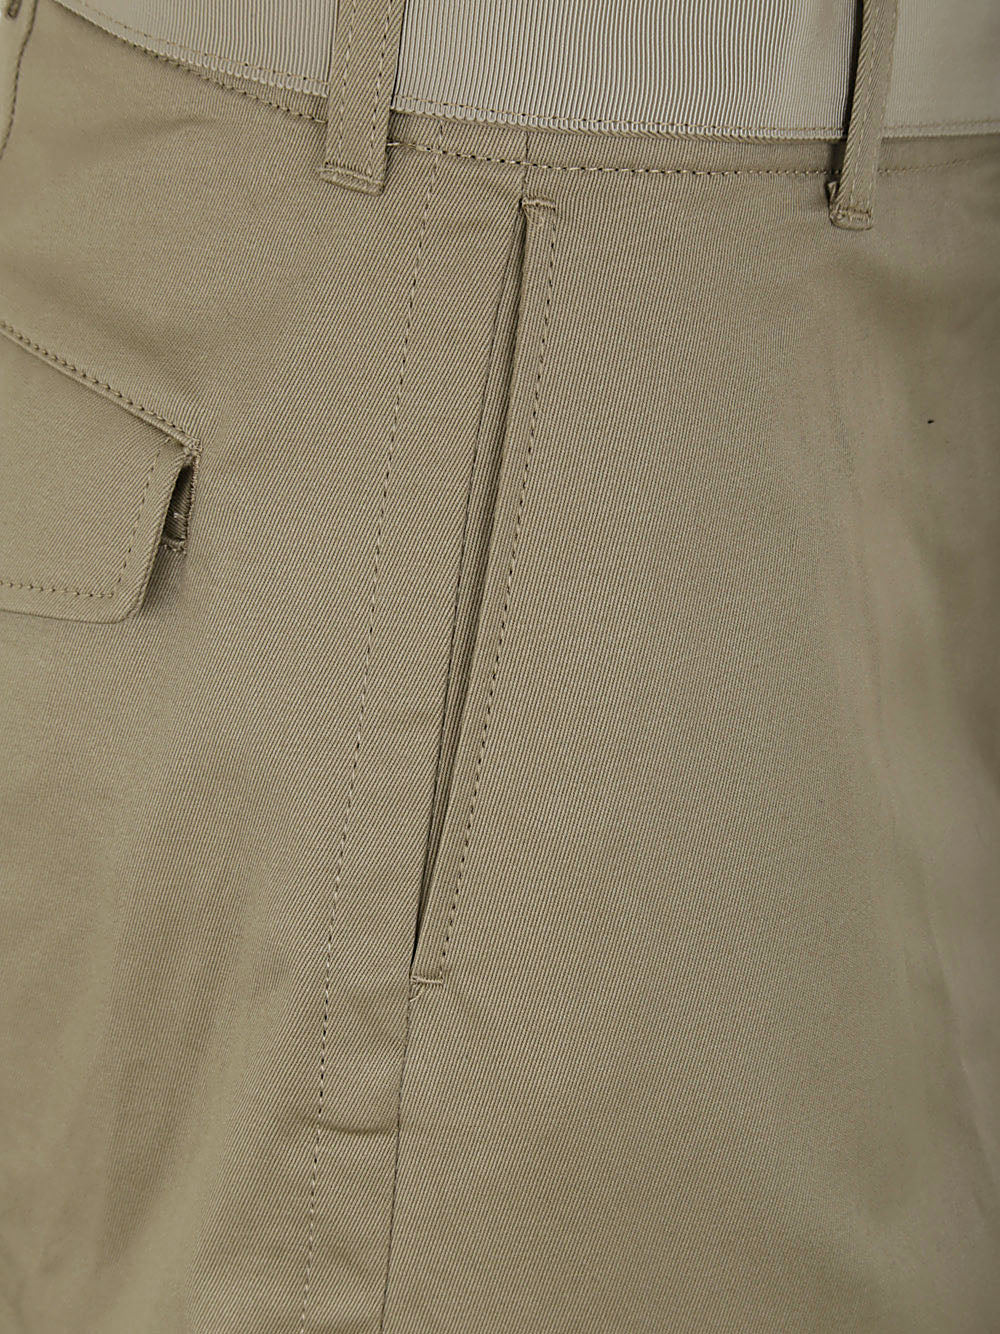 Cotton Chino Pants